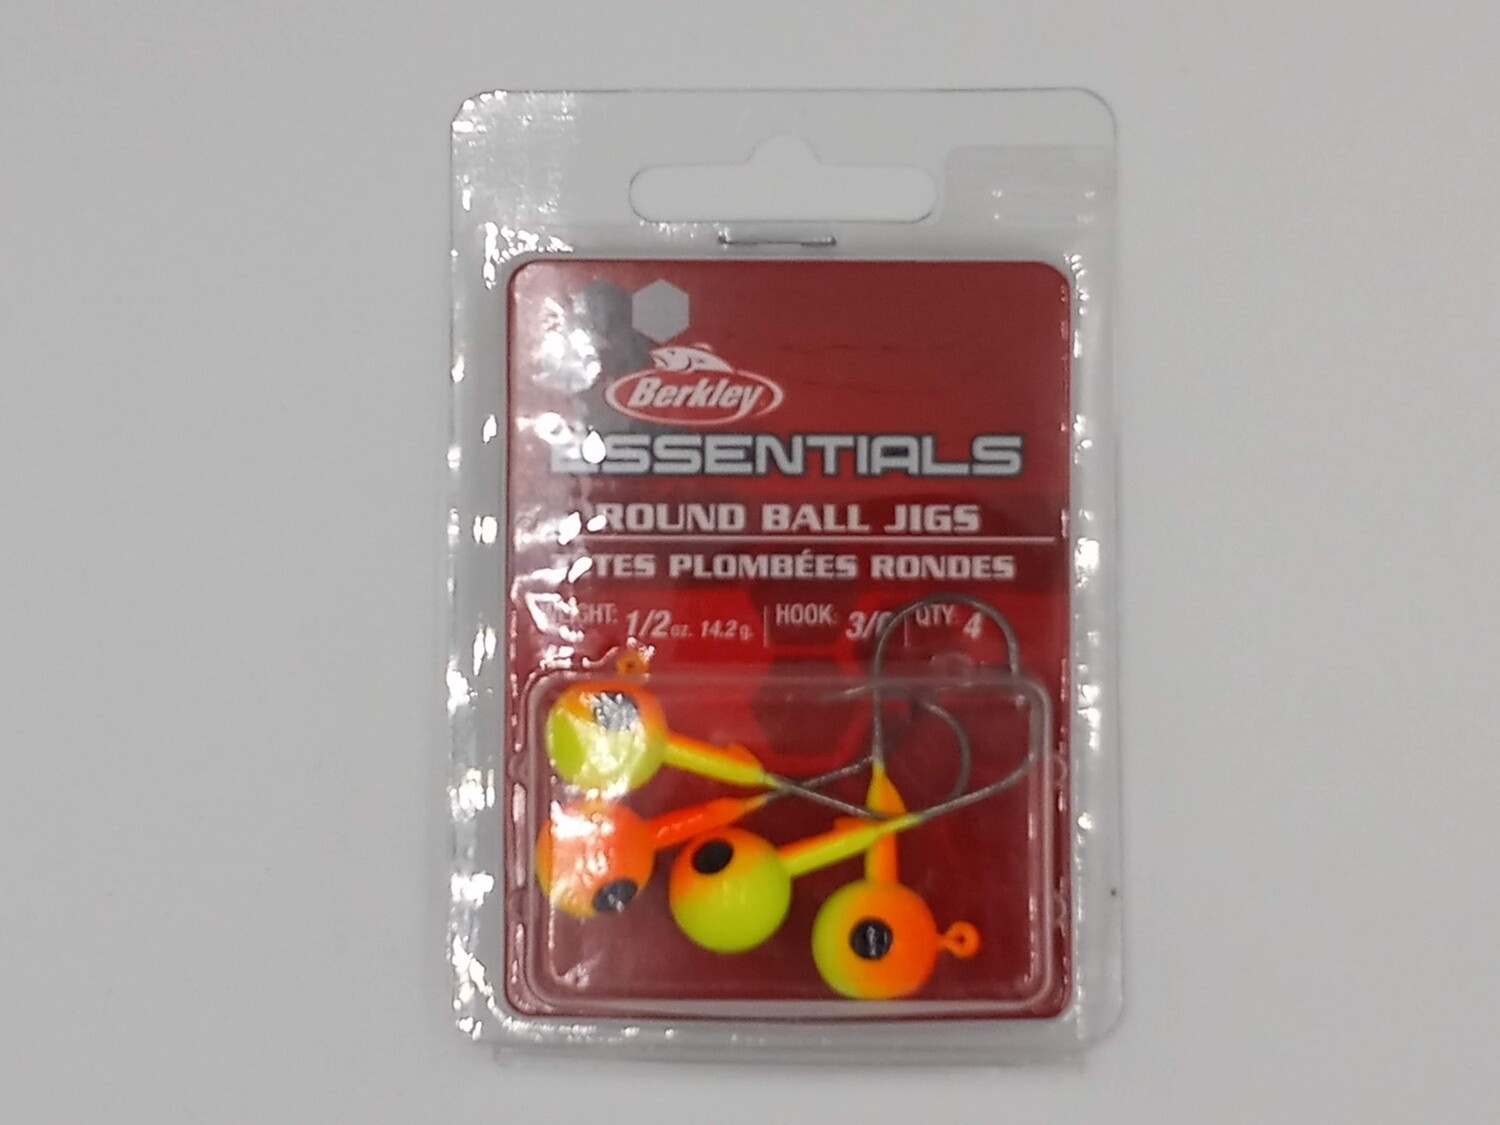 Berkley Essentials Round Ball Jigs Chartreuse/Orange 3/0 1/2oz